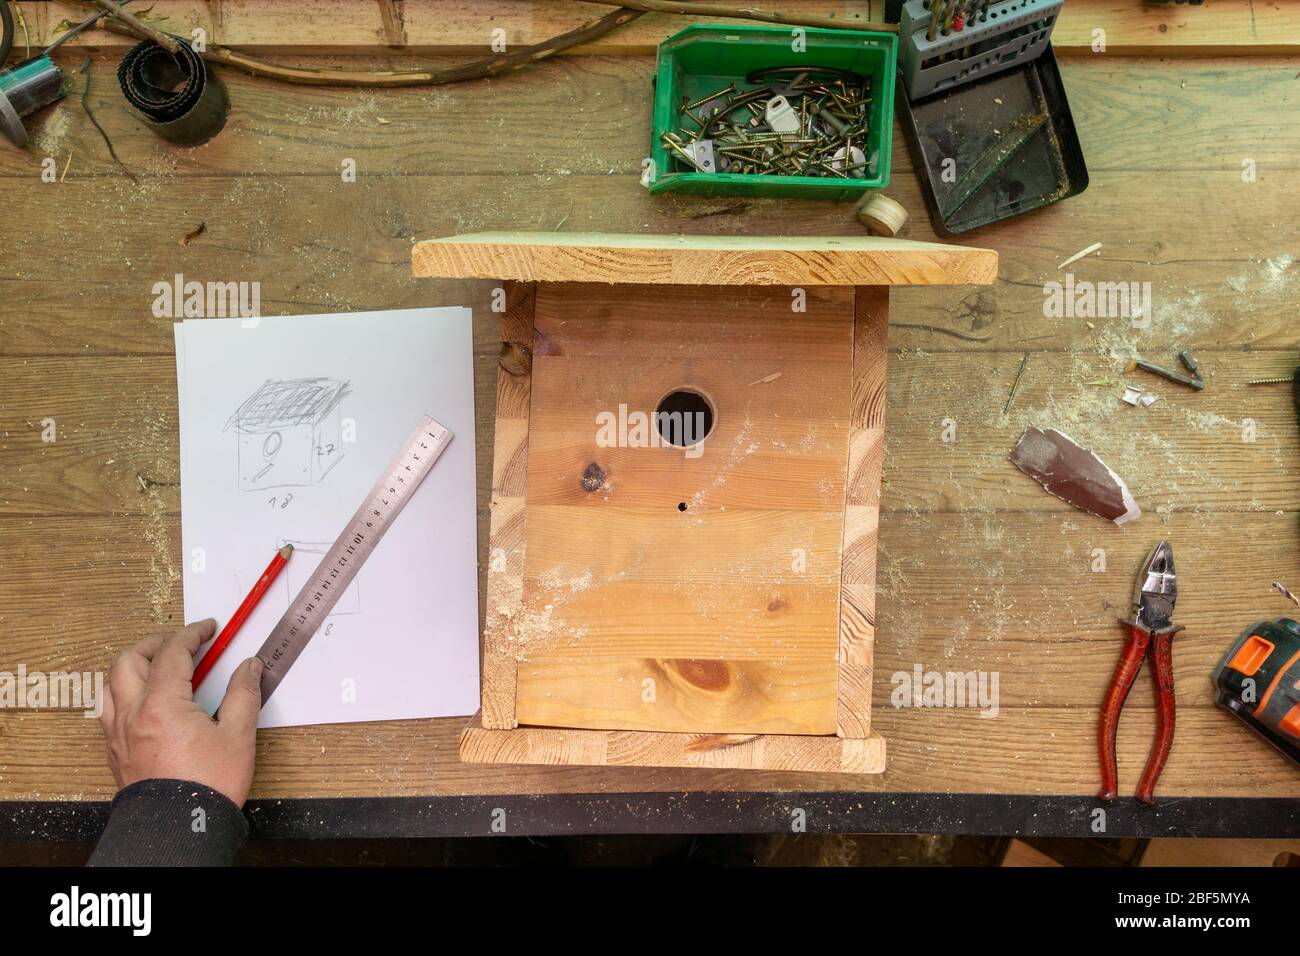 Bau Vogelhaus, Holz, Schrauben und Werkzeuge liegen auf der Bank Stockfoto